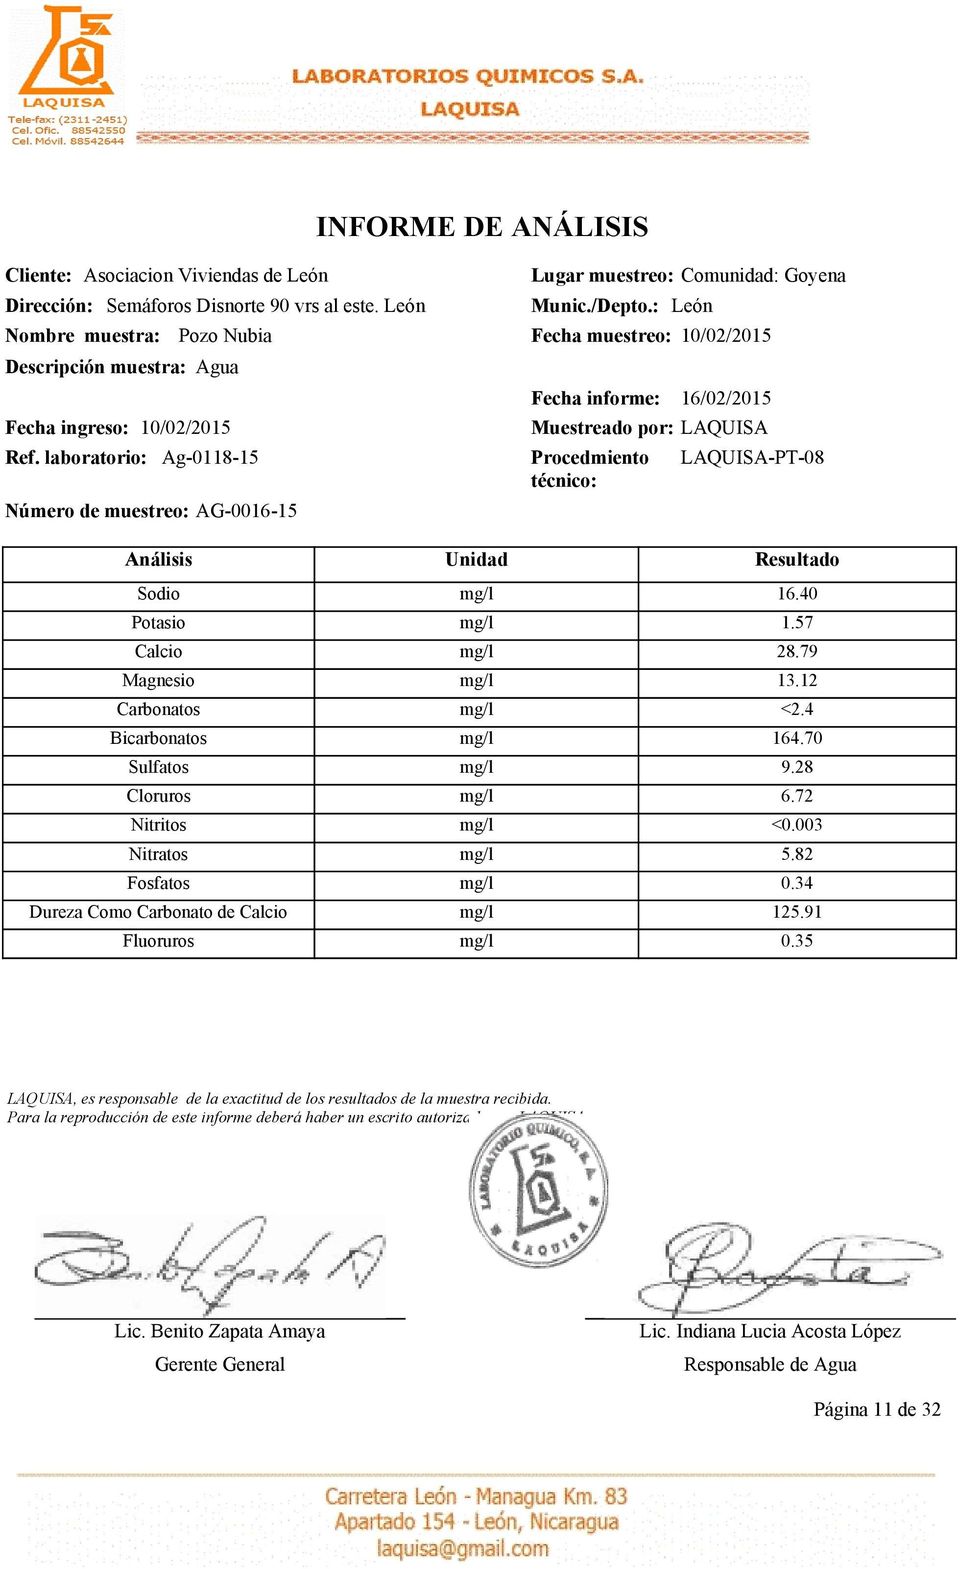 Nitratos Fosfatos Dureza Como Carbonato de Calcio Fluoruros Fecha informe: 16/02/2015 16.40 1.57 28.79 13.